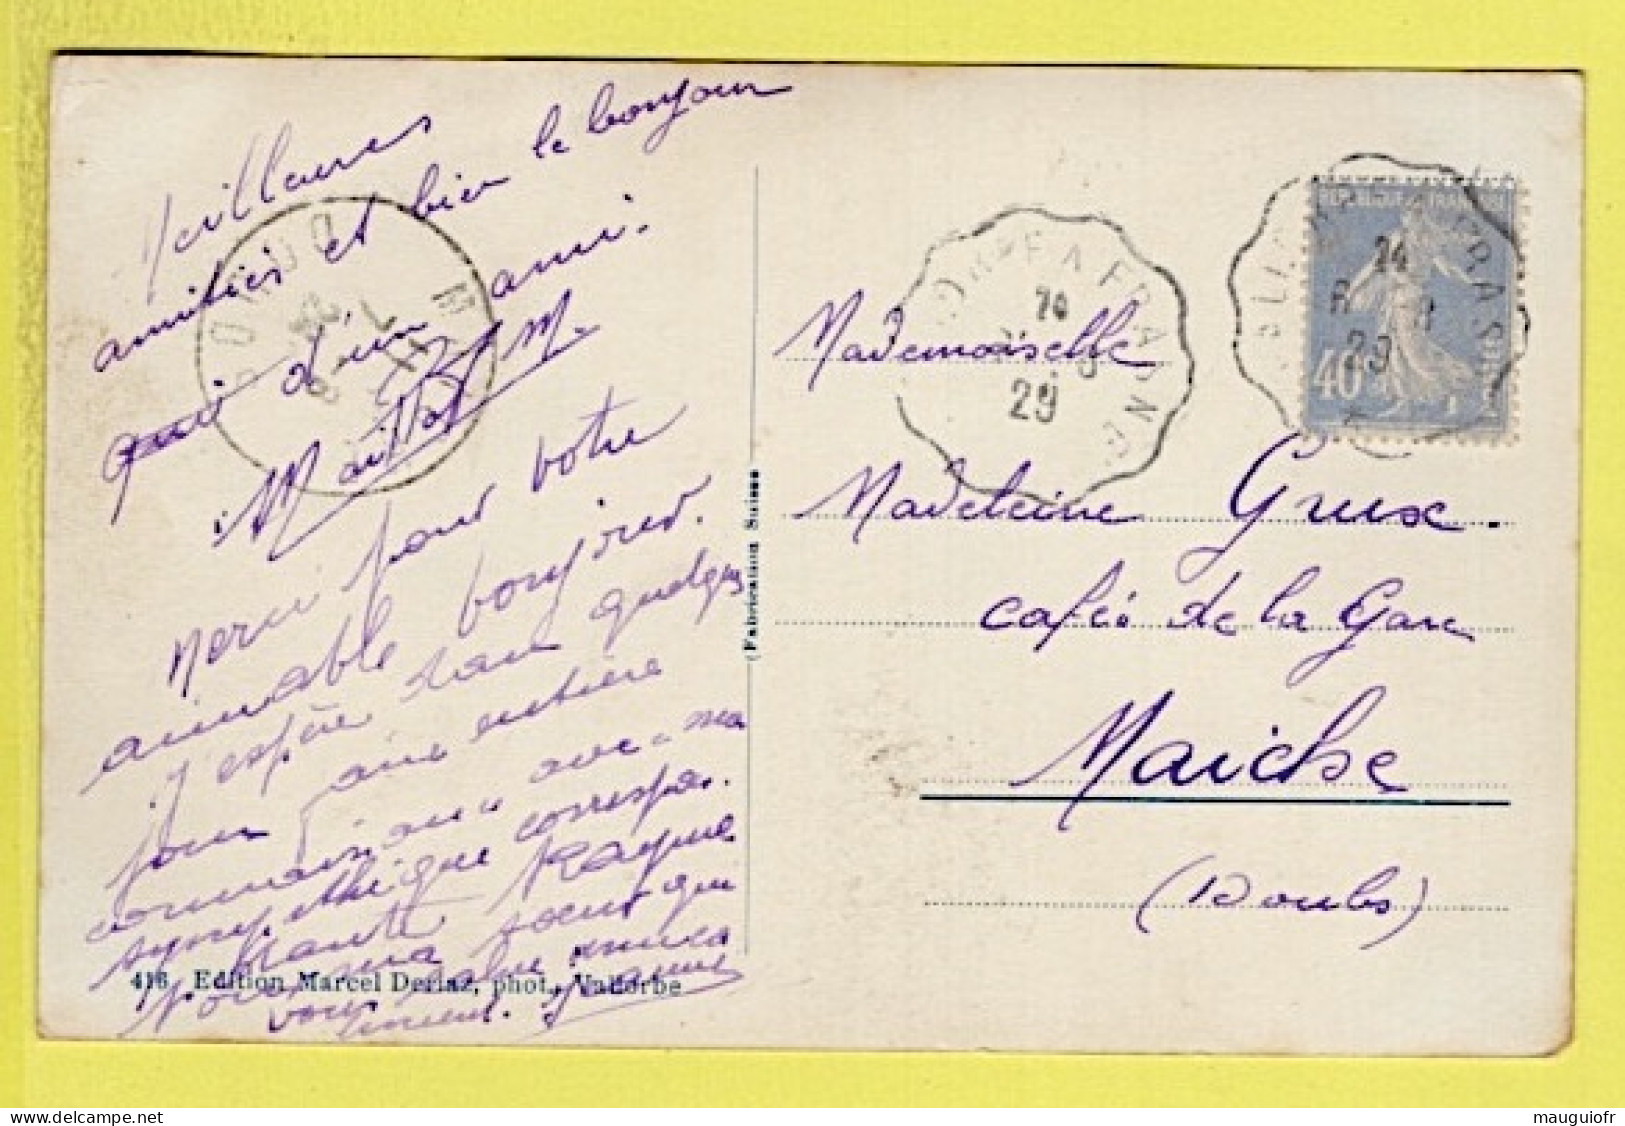 SUISSE / CANTON DE VAUD / VALLORBE / PASSAGE D'UN TRAIN SUR LE VIADUC DU DAY / 1929 - Vallorbe